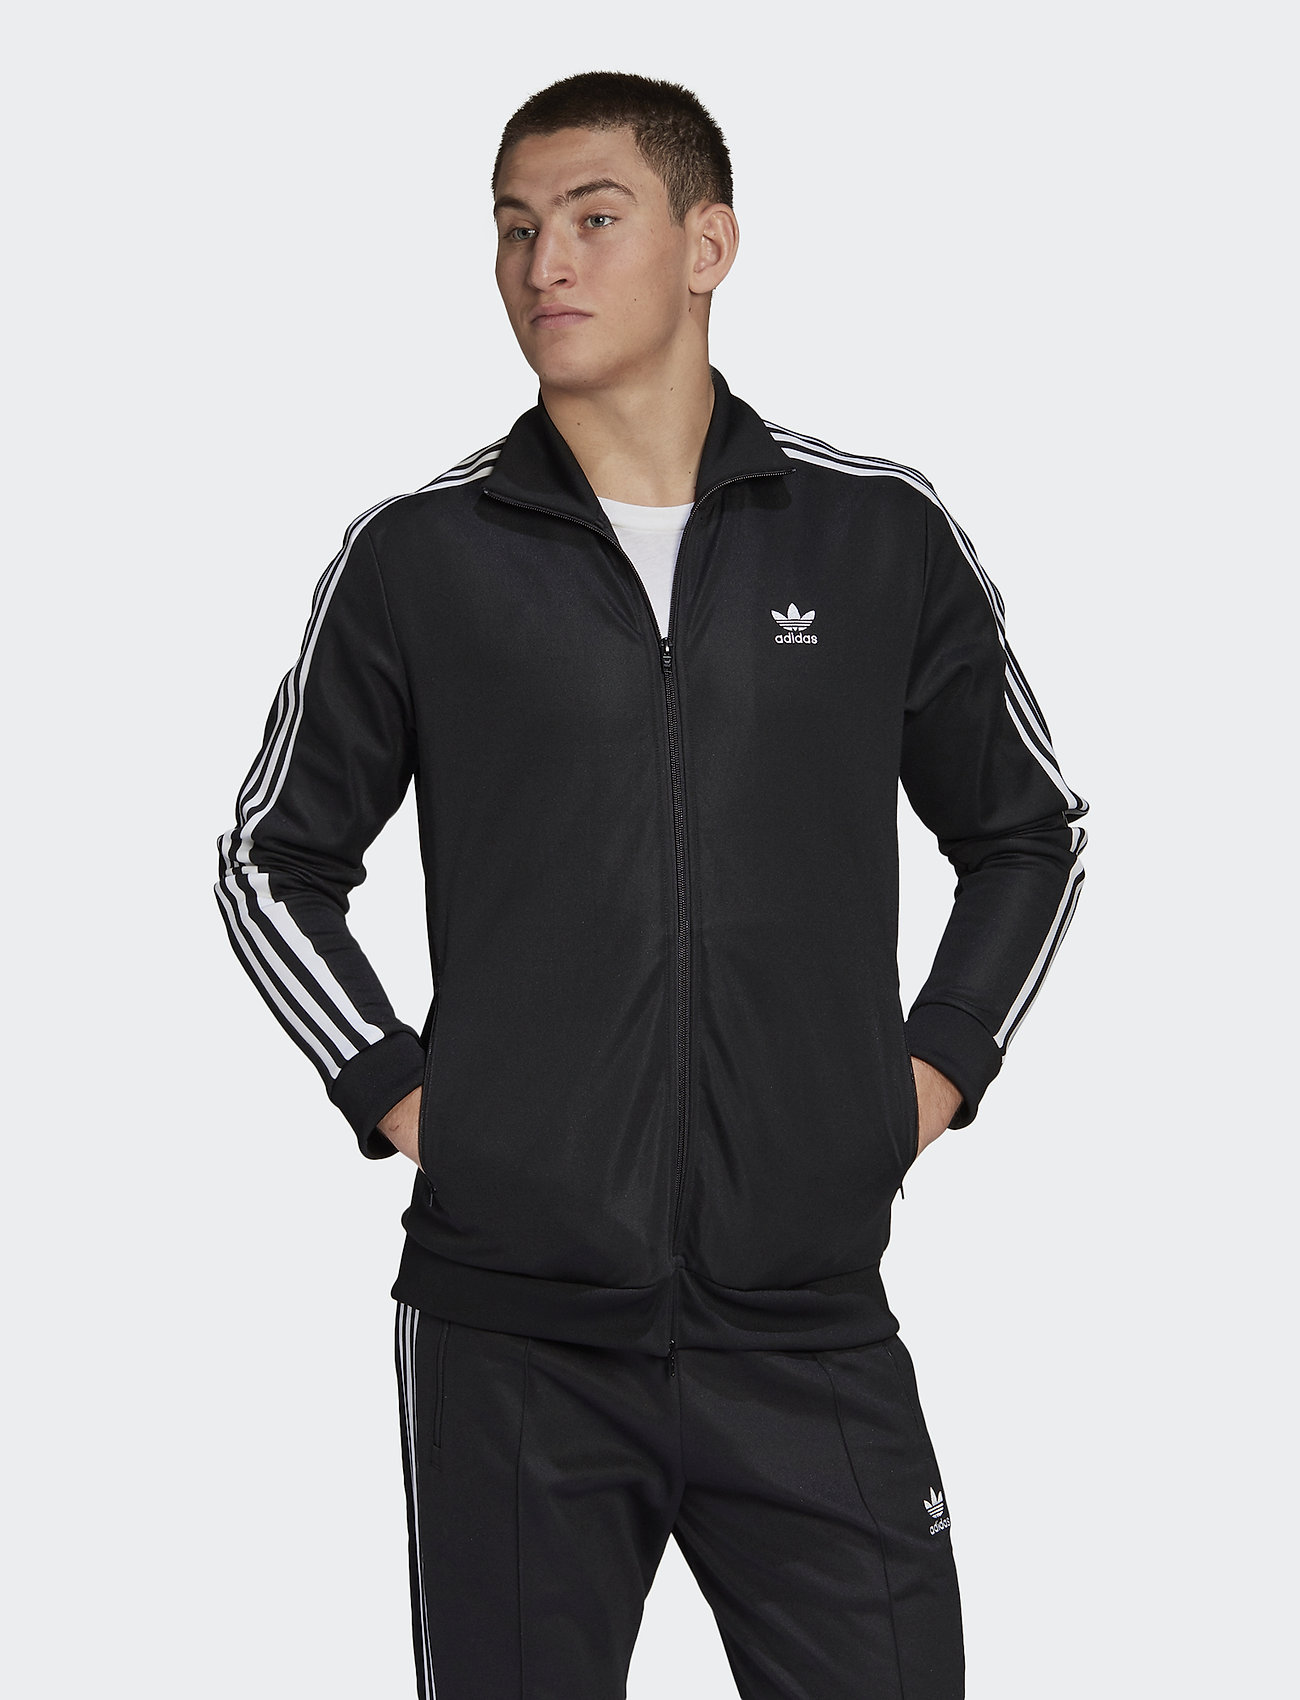 Beckenbauer Tt (Black) (52.46 €) - adidas Originals - | Boozt.com